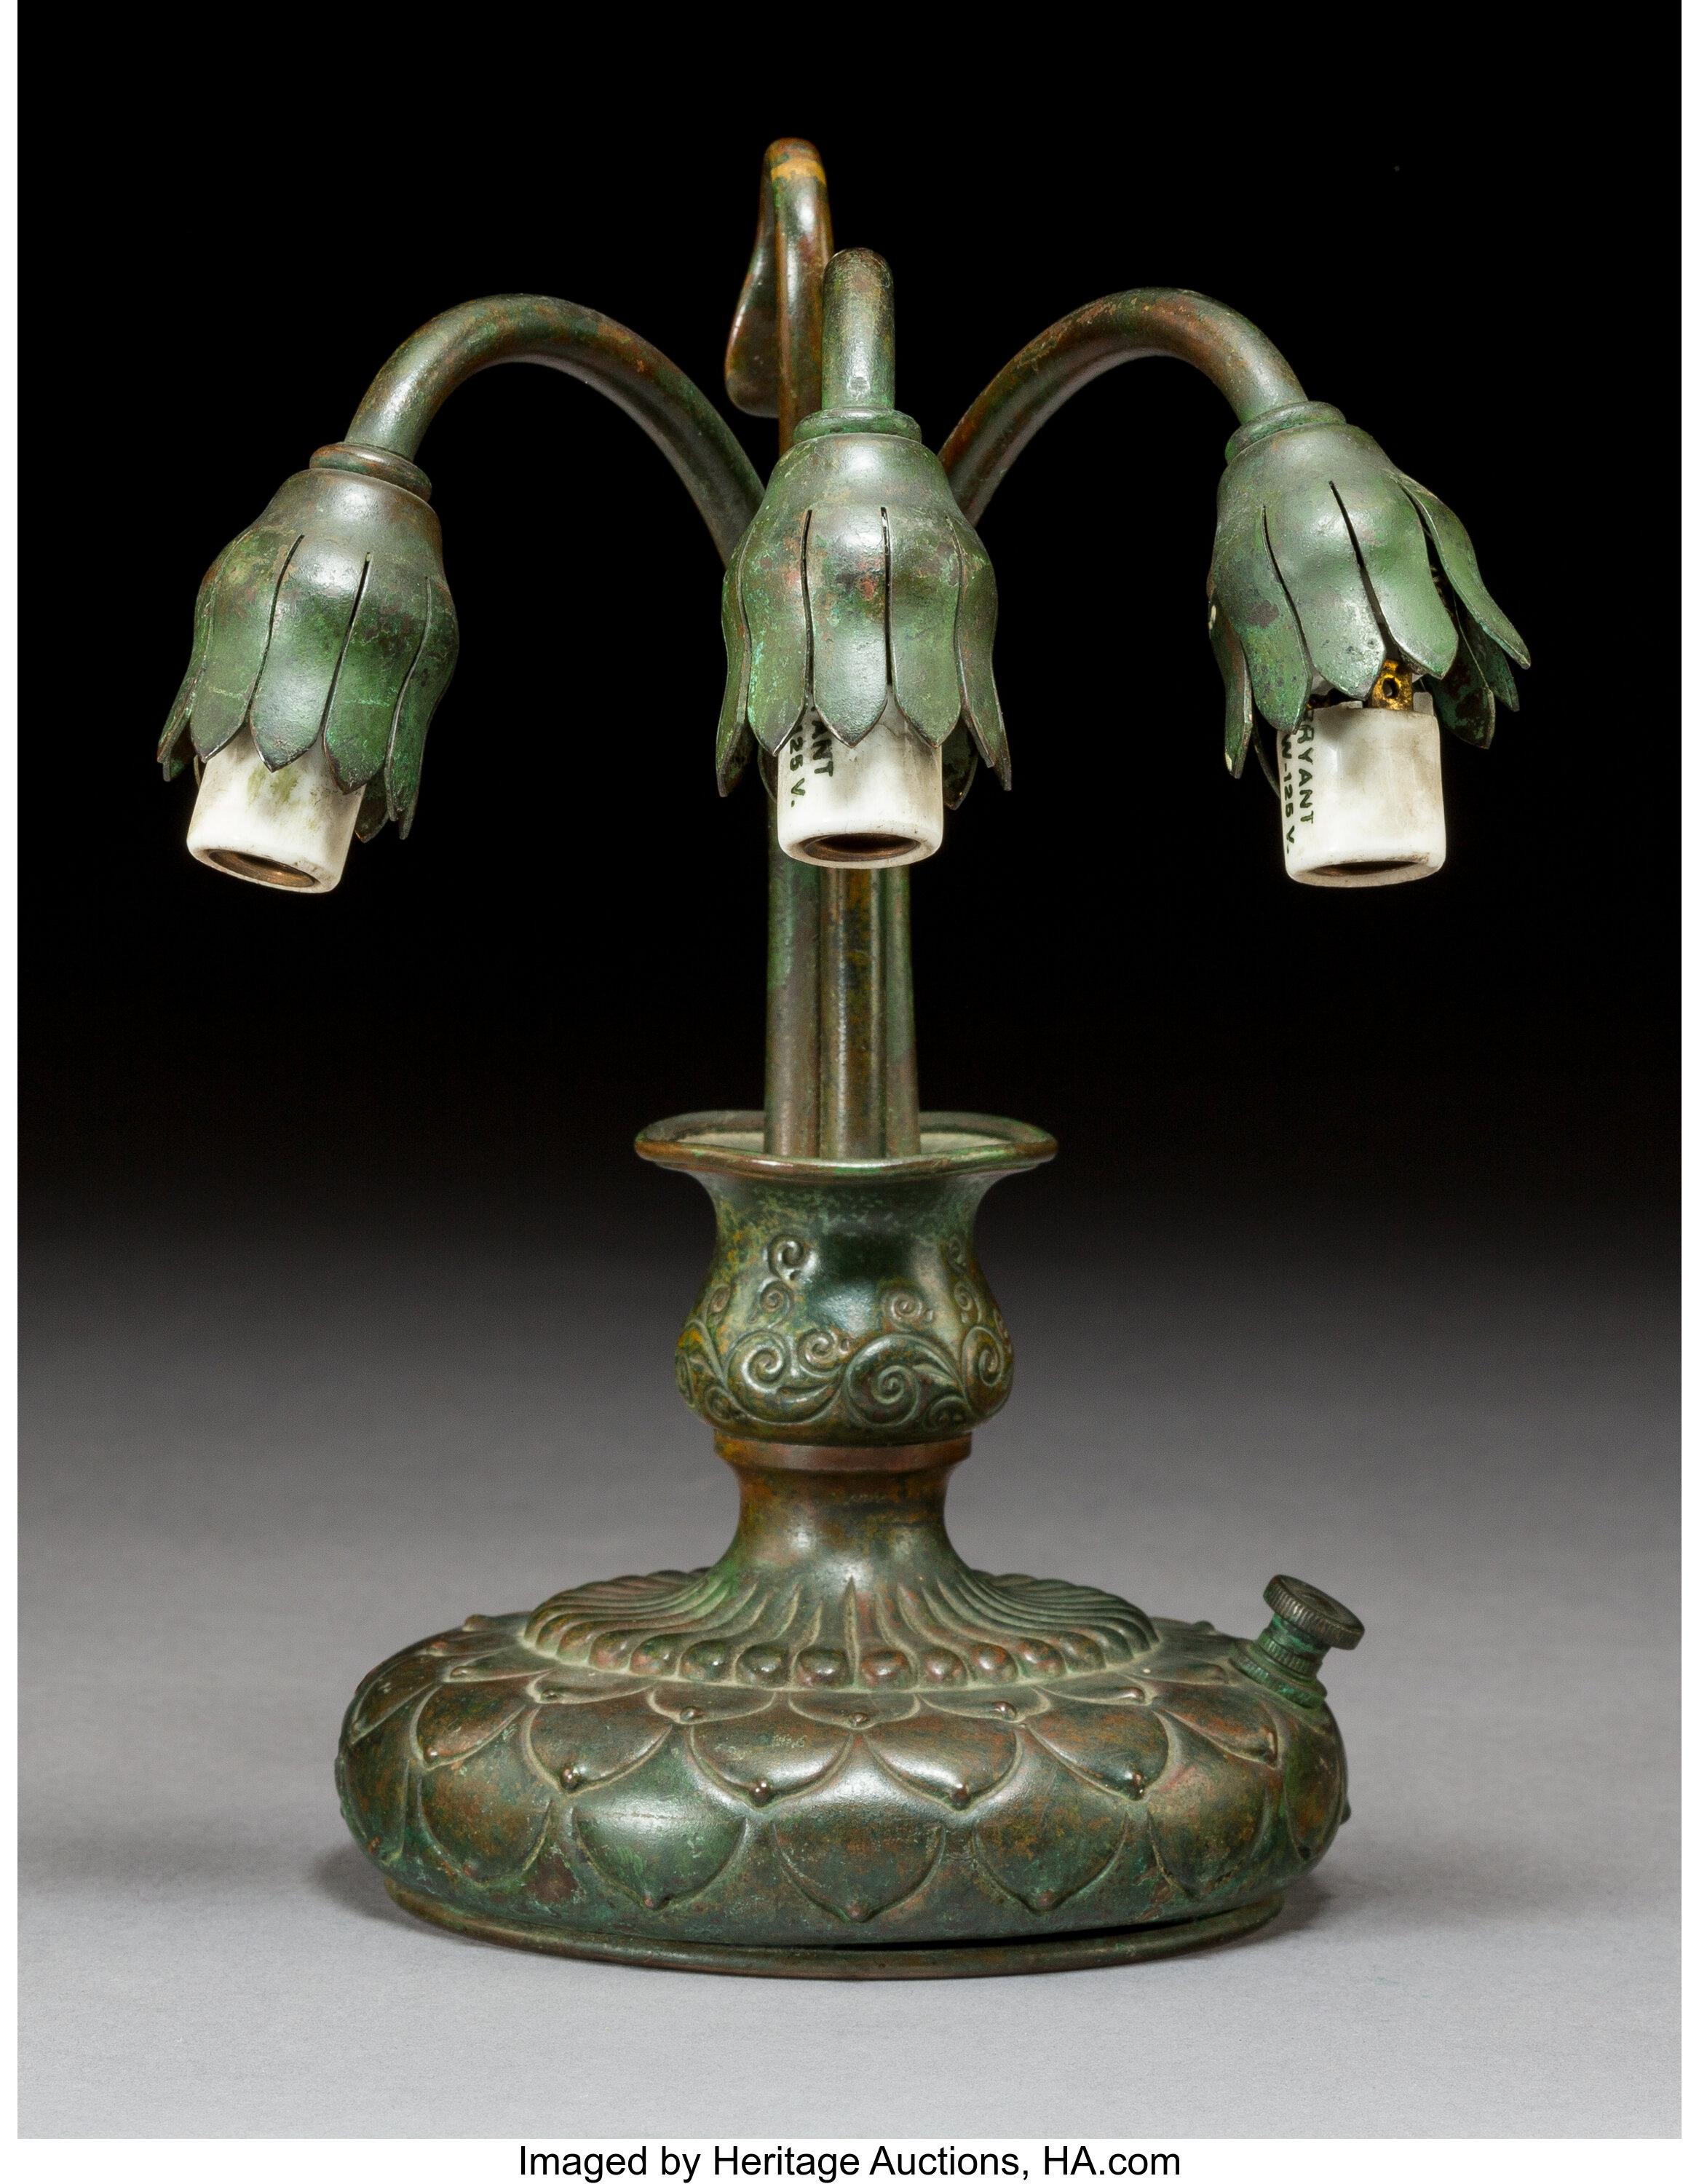 Lamp, 1915 - Louis Comfort Tiffany 